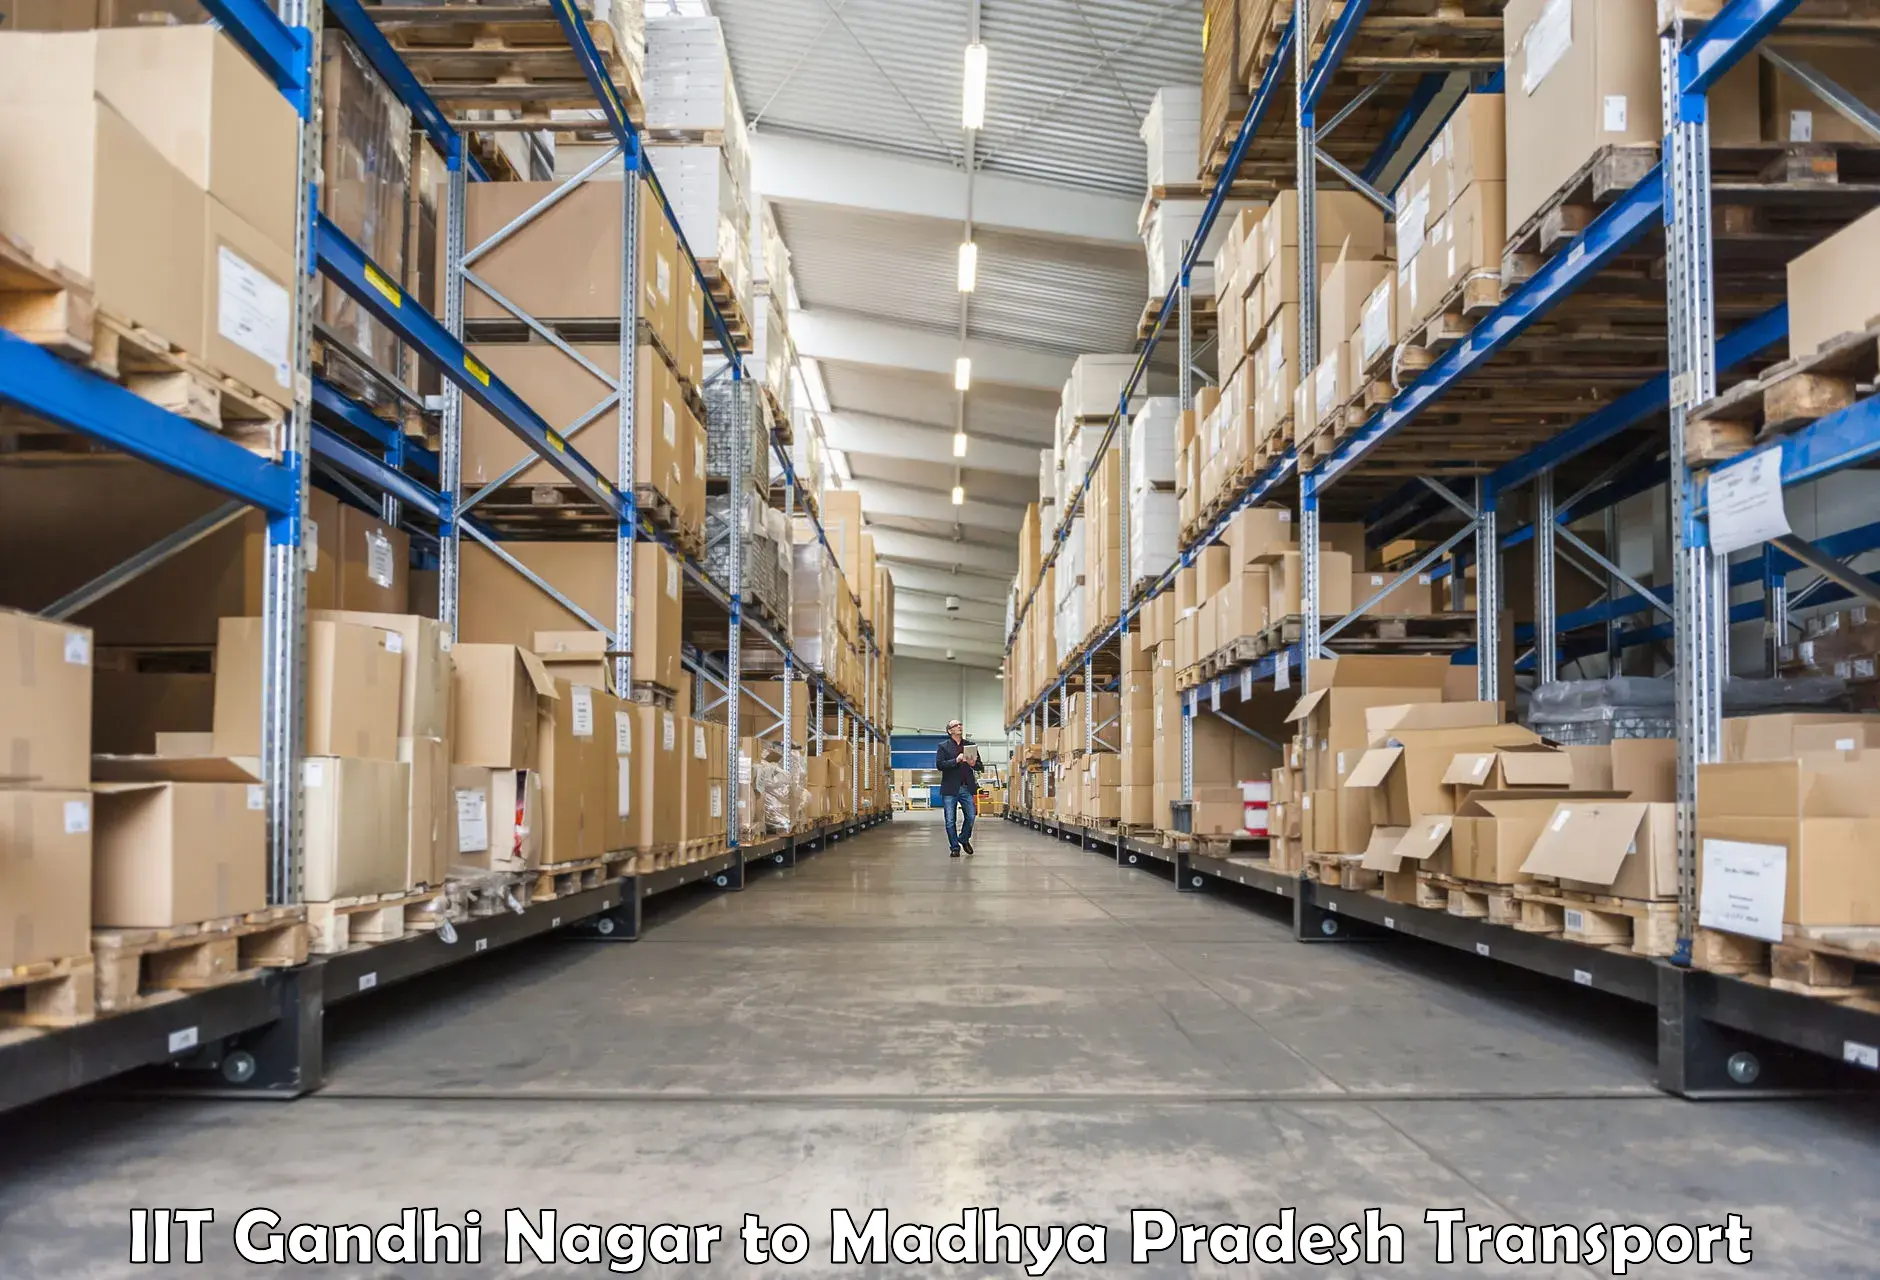 Furniture transport service IIT Gandhi Nagar to Madhya Pradesh